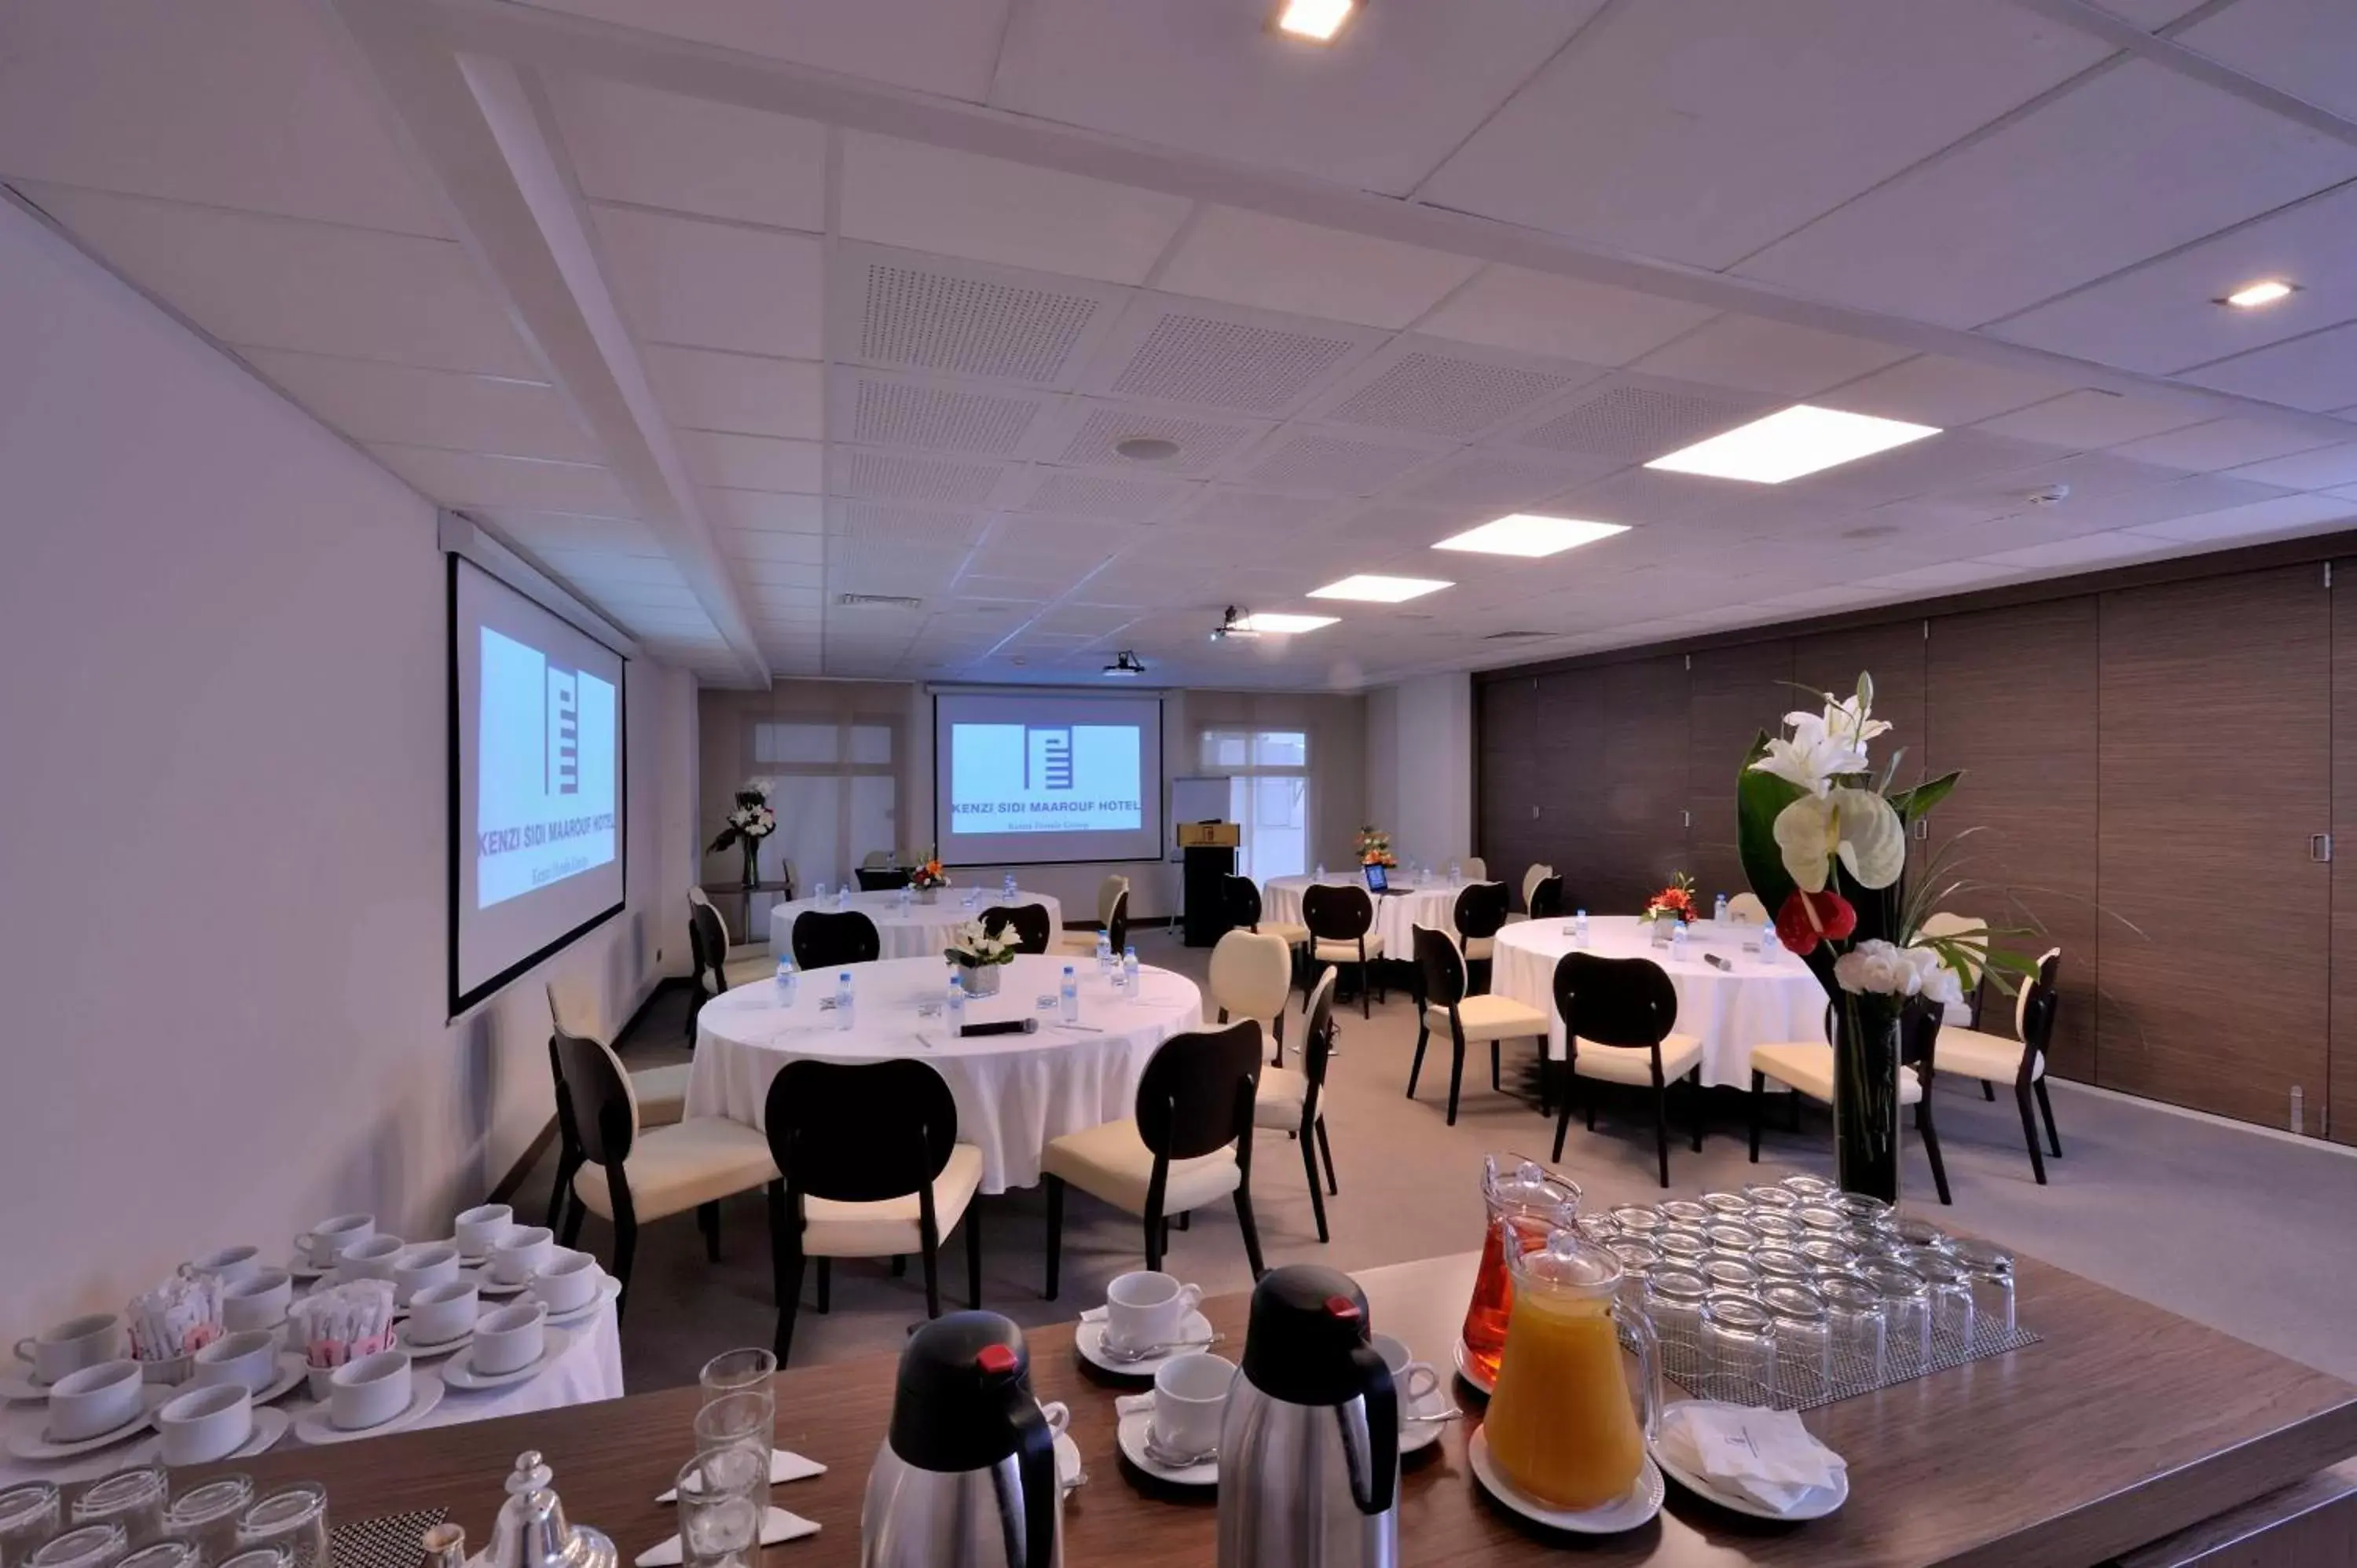 Meeting/conference room, Banquet Facilities in Kenzi Sidi Maarouf